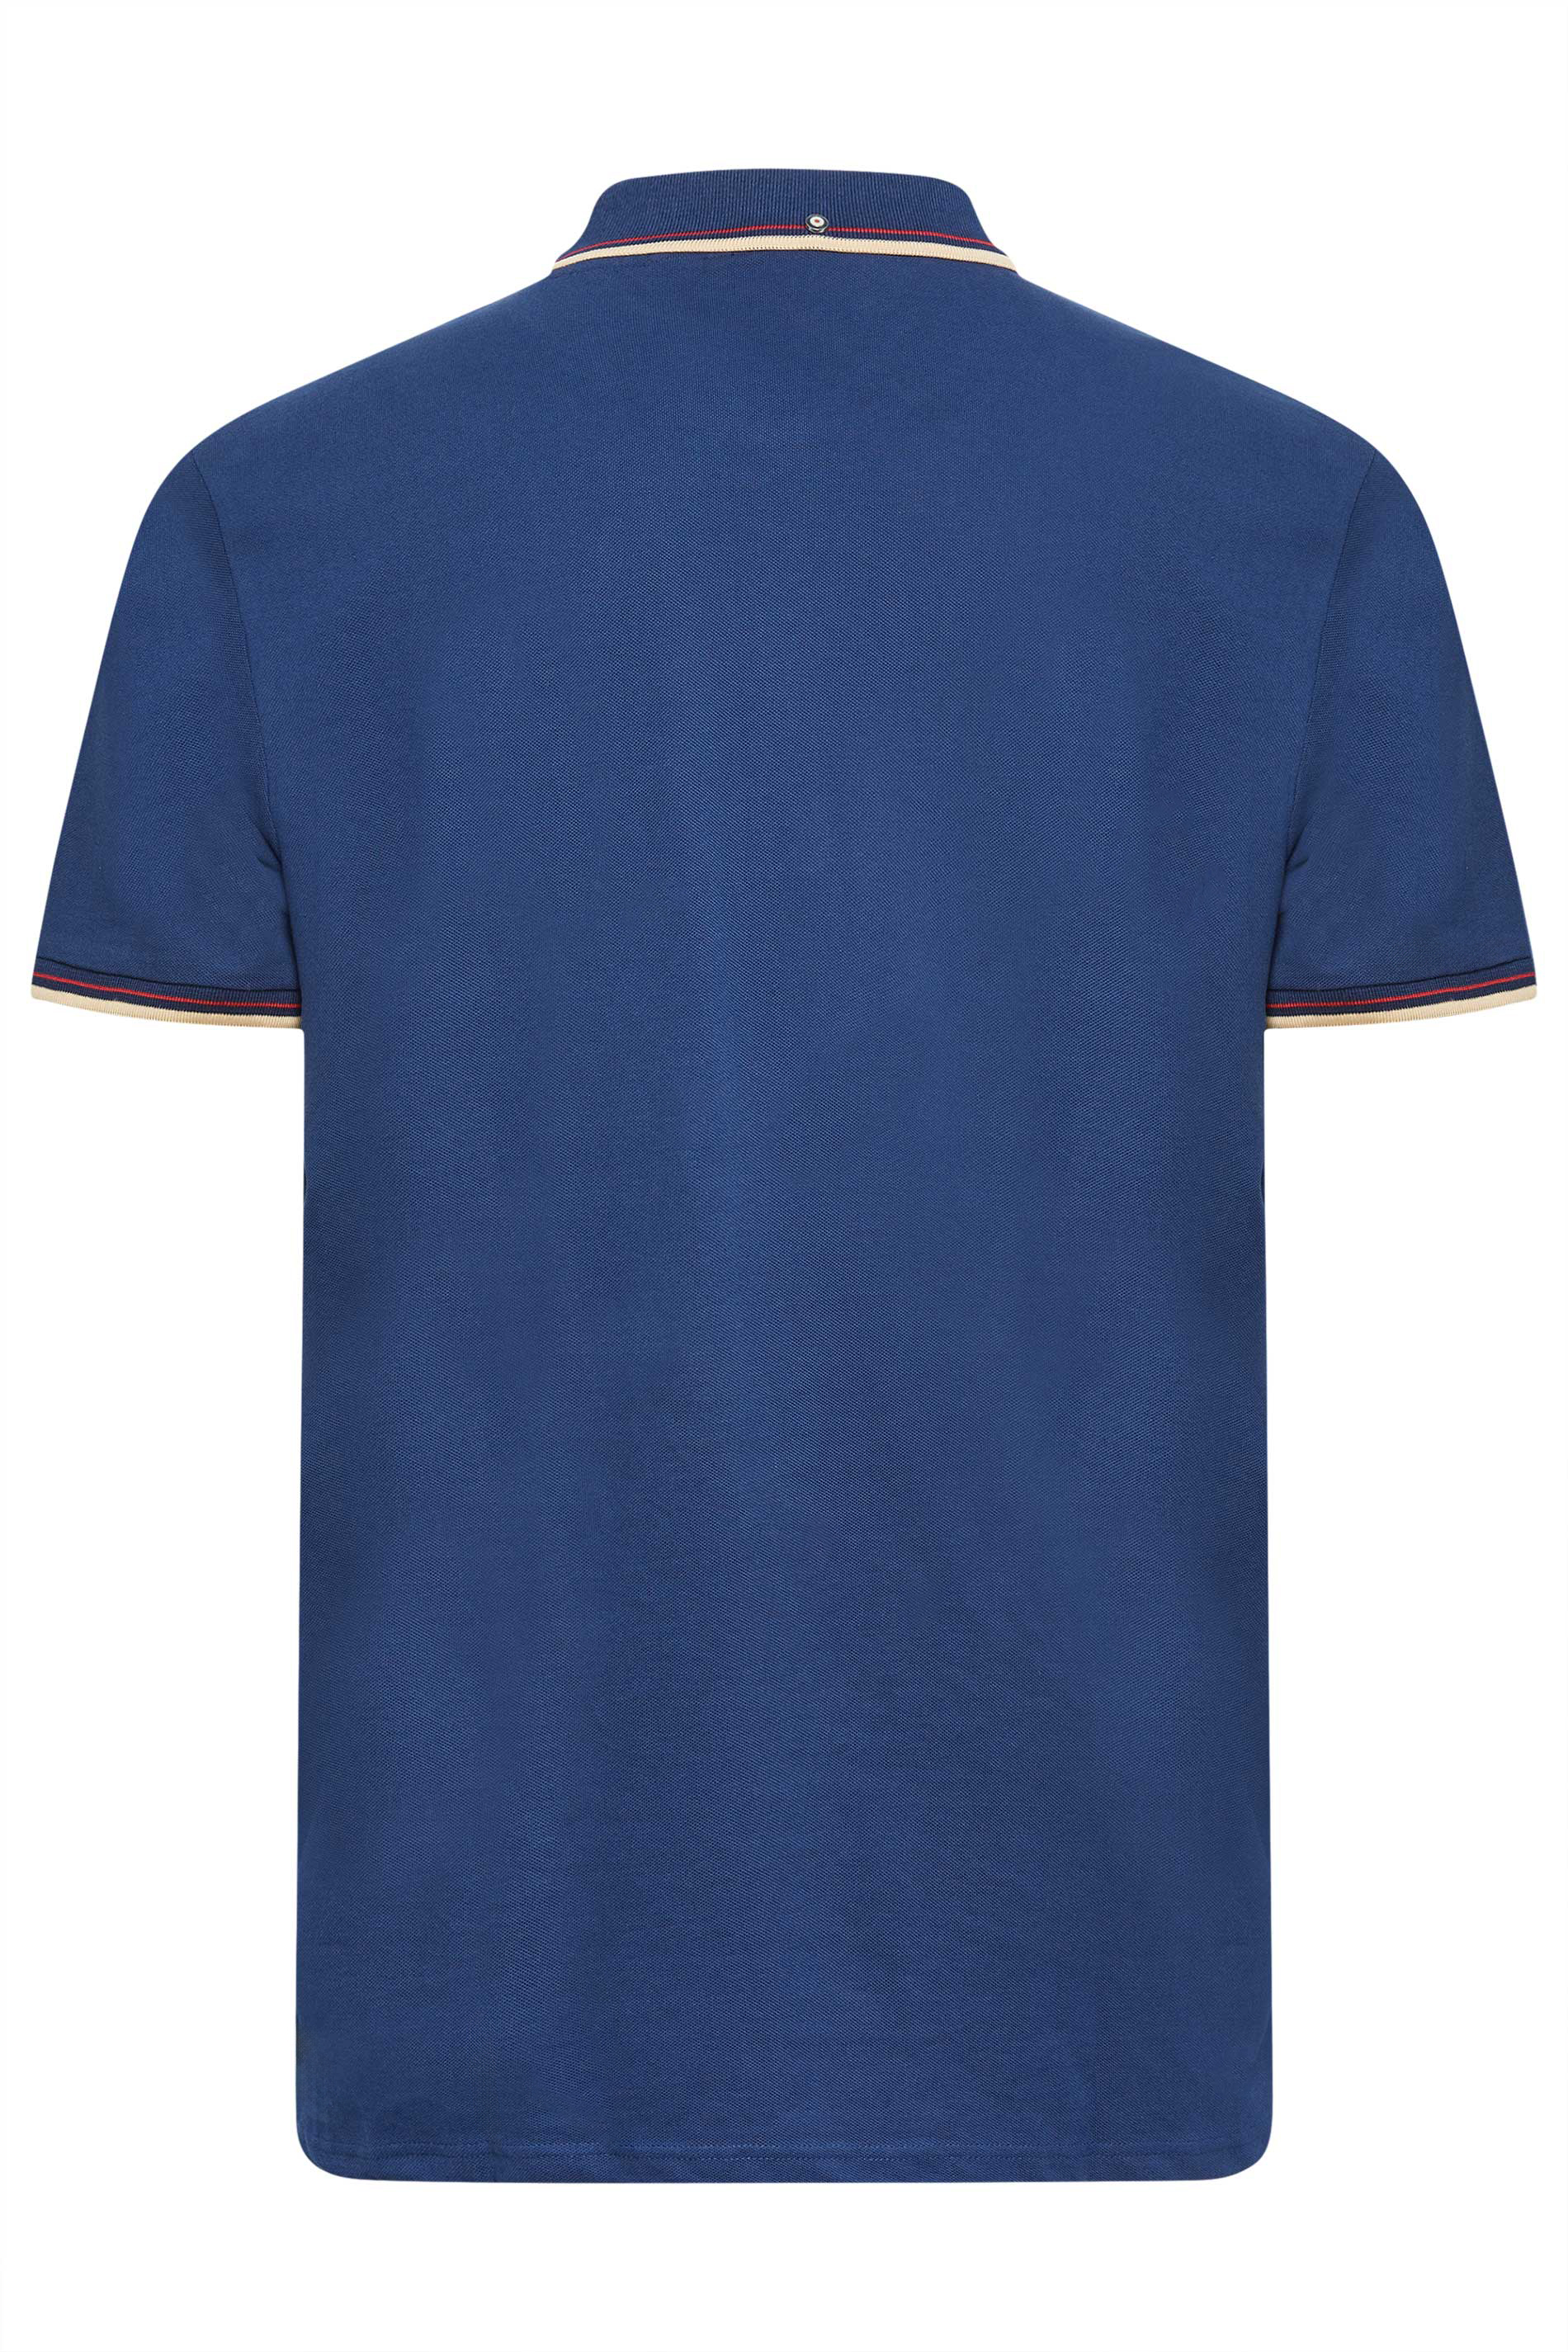 BEN SHERMAN Blue Tipped Polo Shirt | BadRhino 3